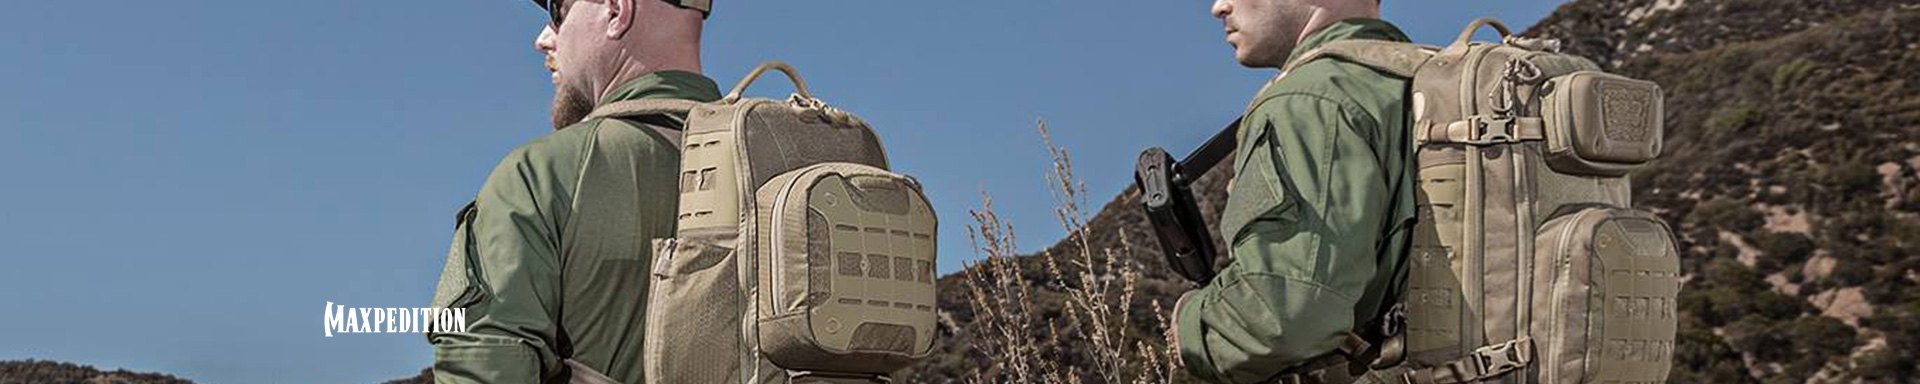 Maxpedition Tactical Daypacks & Backpacks